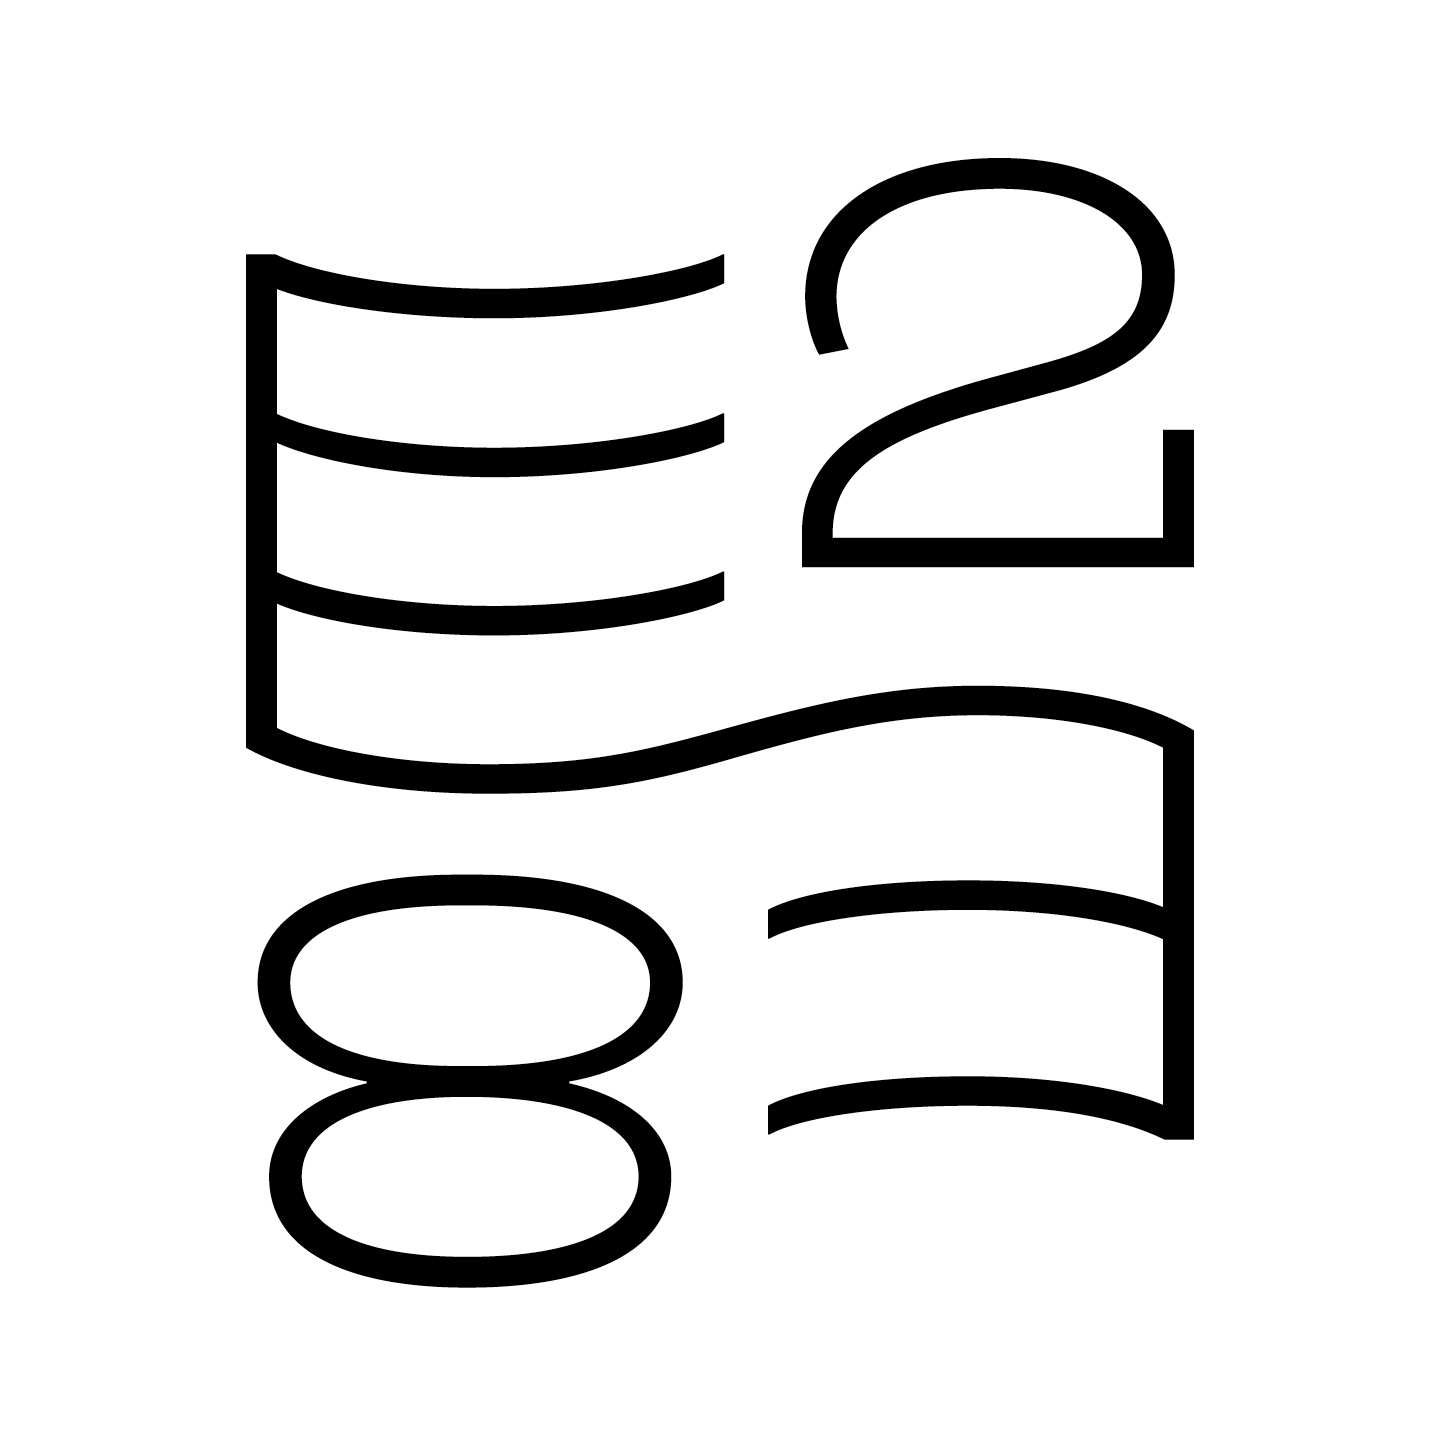 E2-E8 record label logo